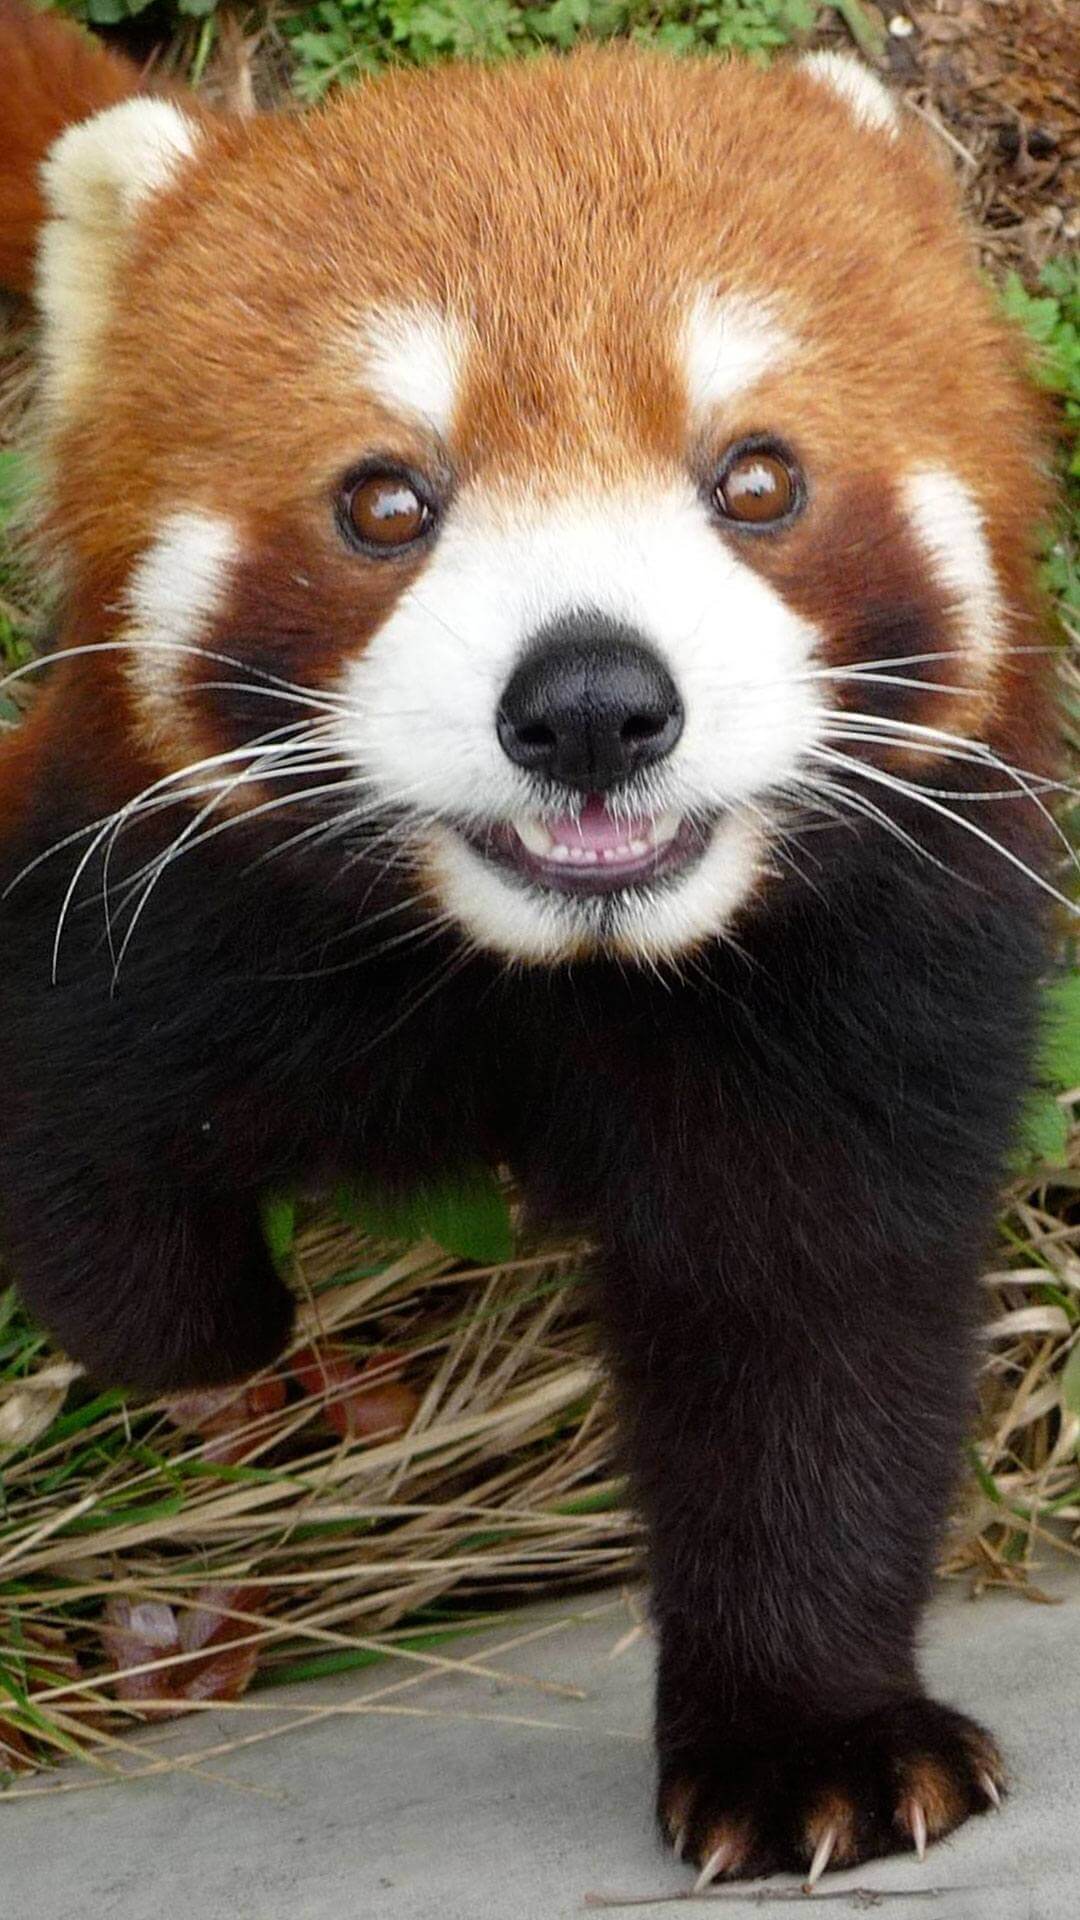 Cute Red Panda Wallpaper iPhone HD. Animal Wallpaper for iPhone